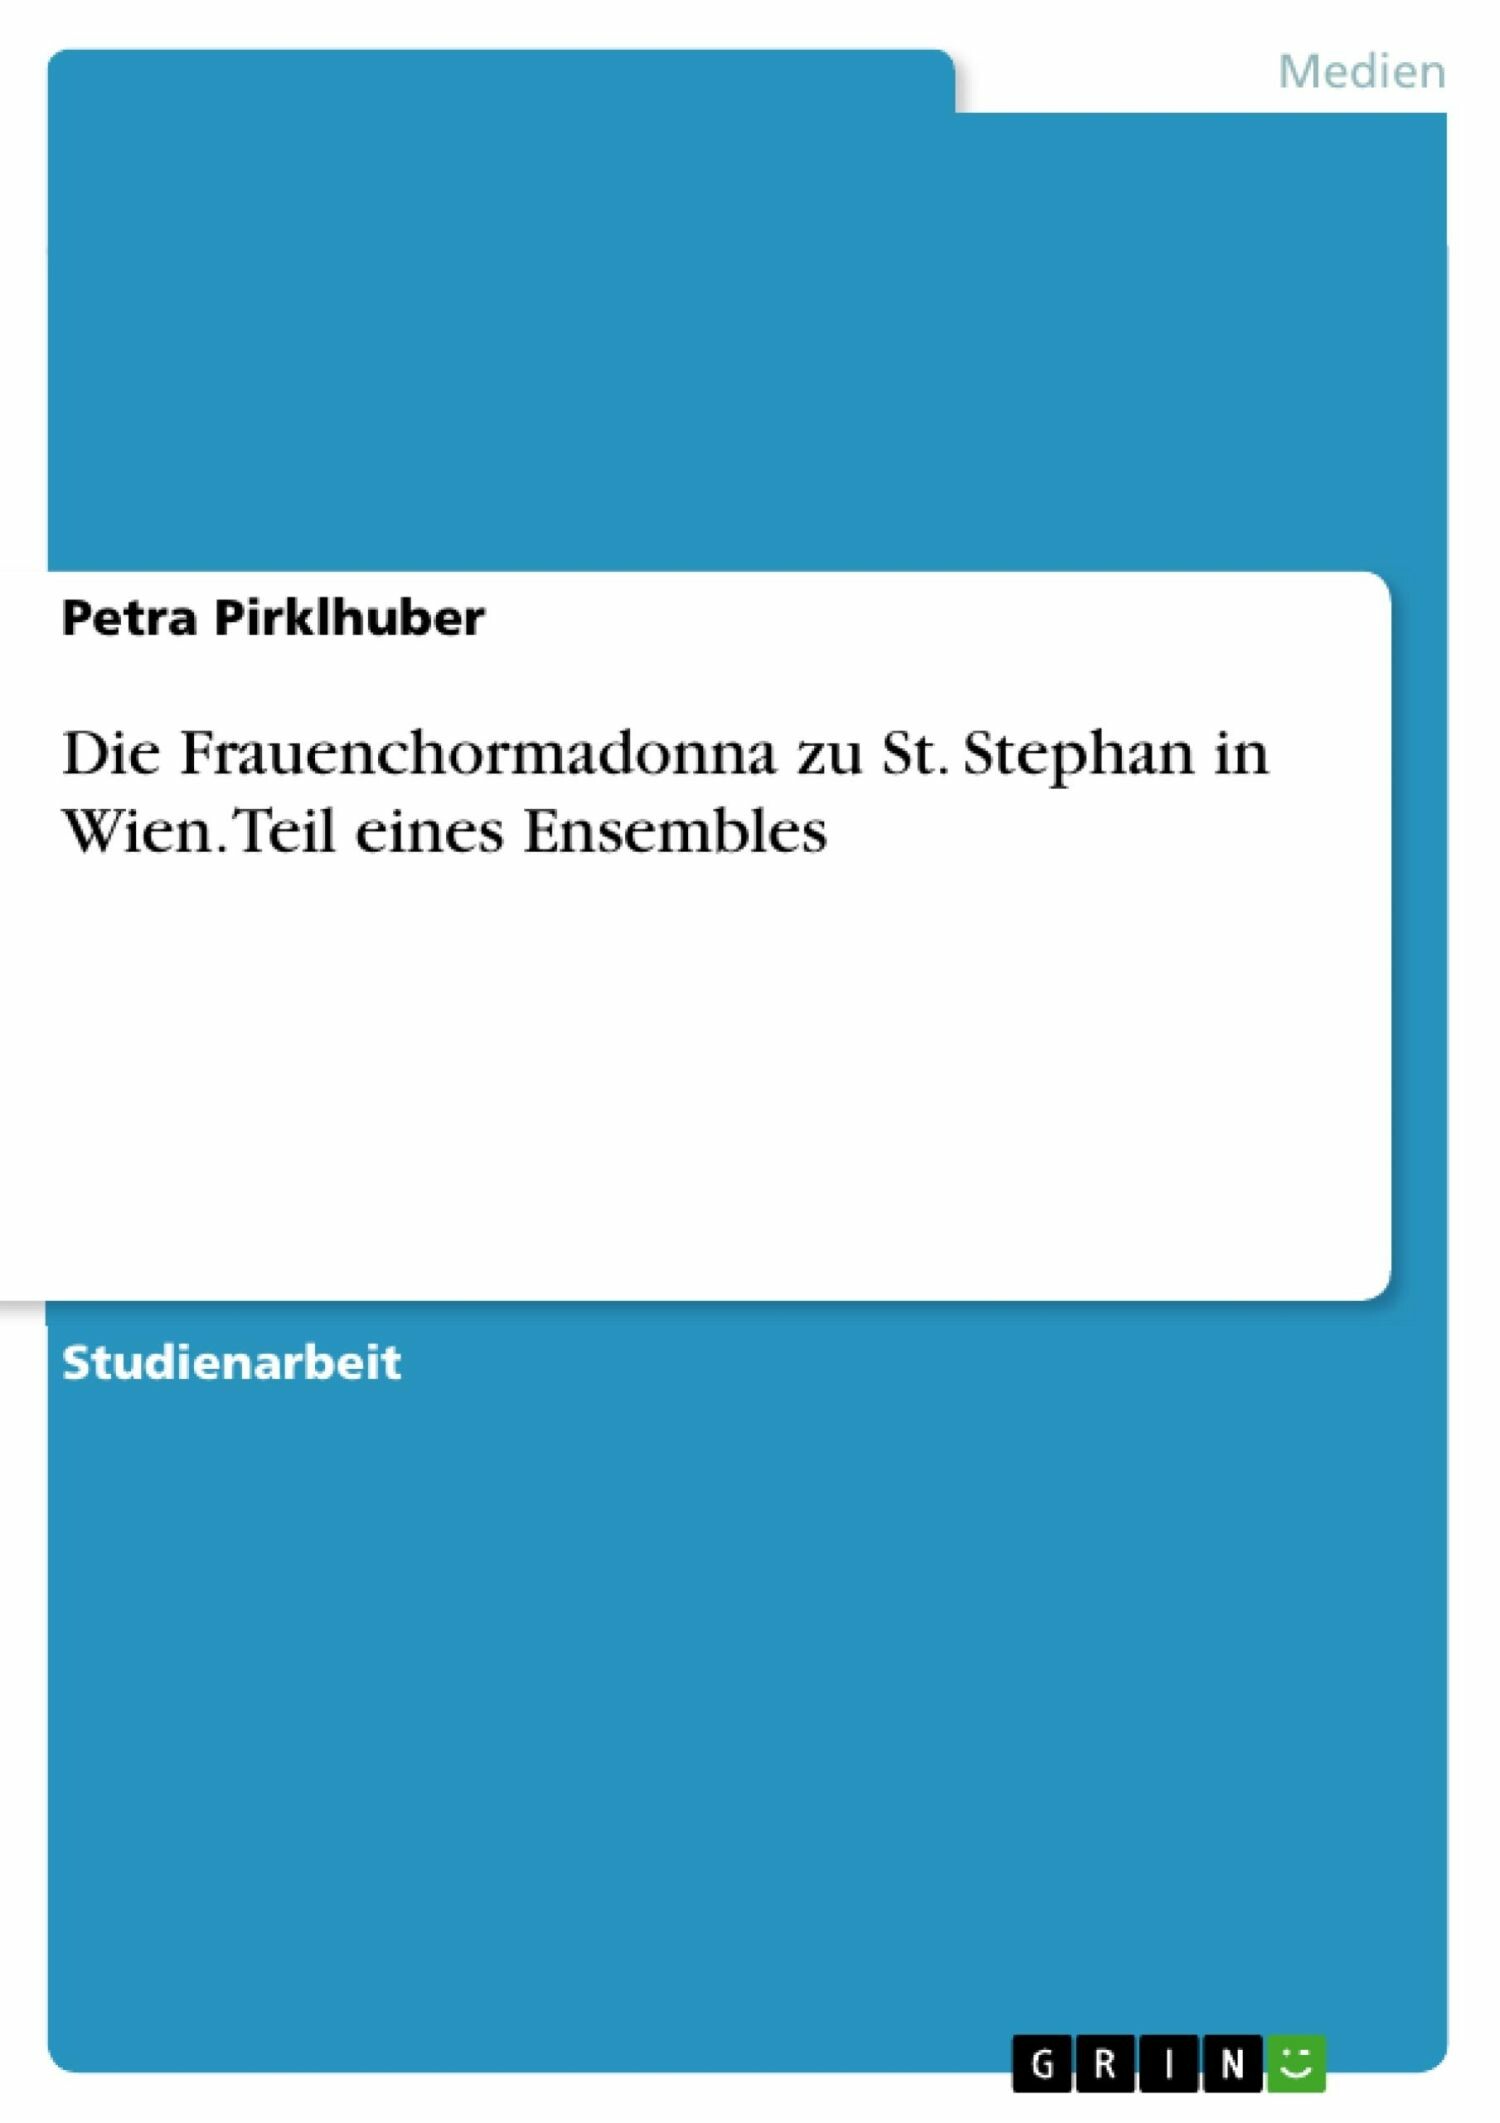 Die Frauenchormadonna zu St. Stephan in Wien. Teil eines Ensembles